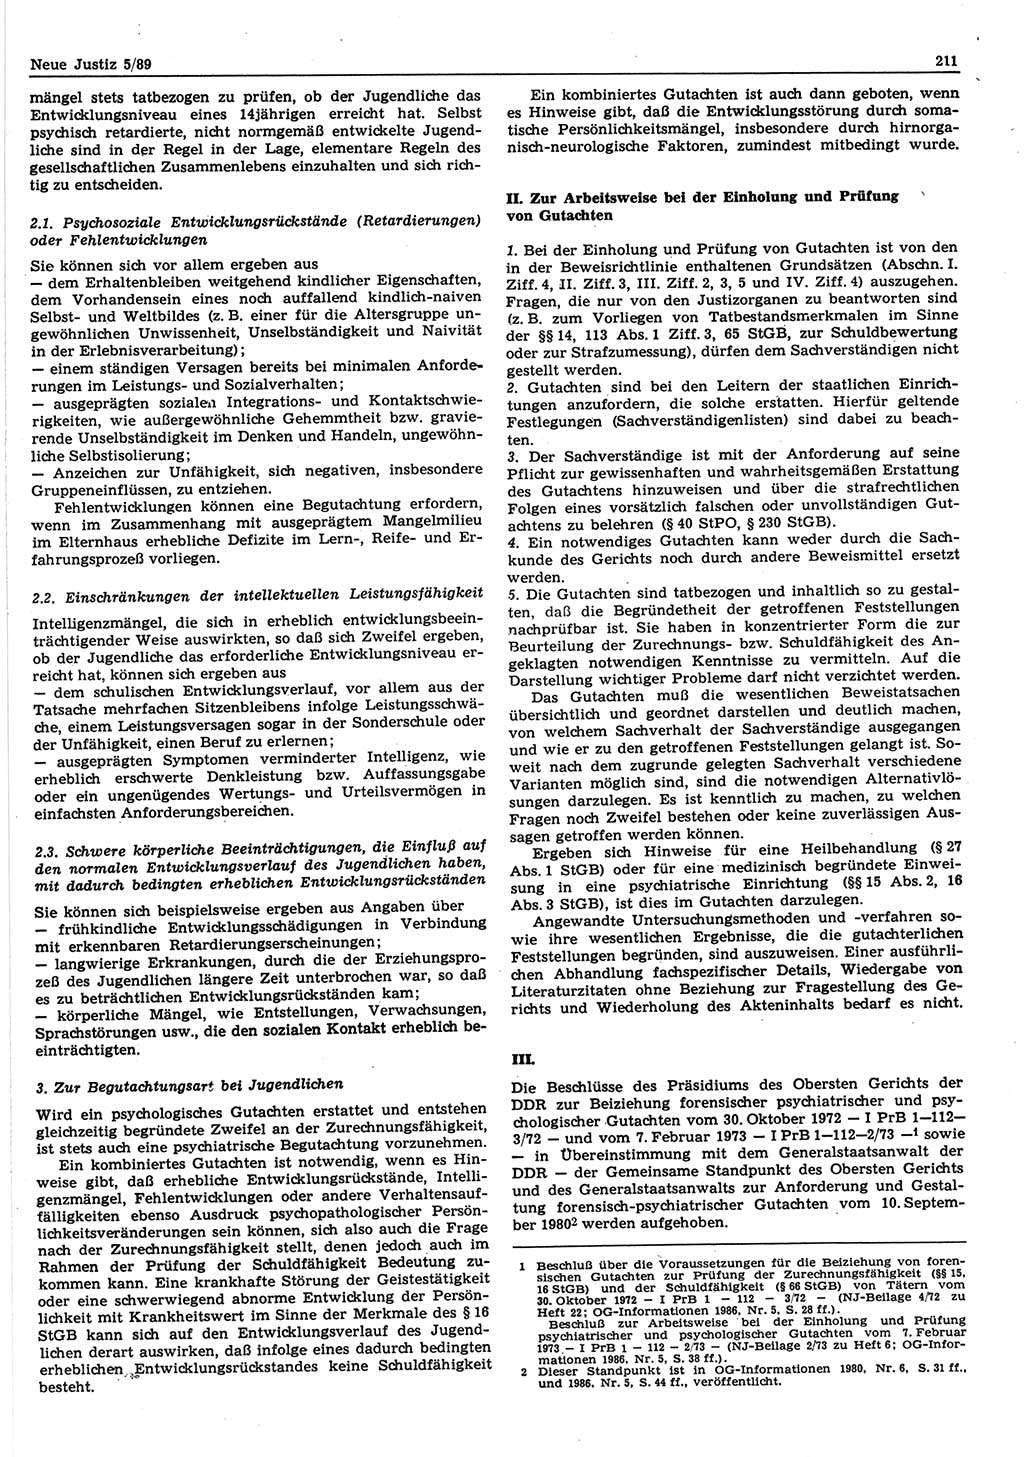 Neue Justiz (NJ), Zeitschrift für sozialistisches Recht und Gesetzlichkeit [Deutsche Demokratische Republik (DDR)], 43. Jahrgang 1989, Seite 211 (NJ DDR 1989, S. 211)